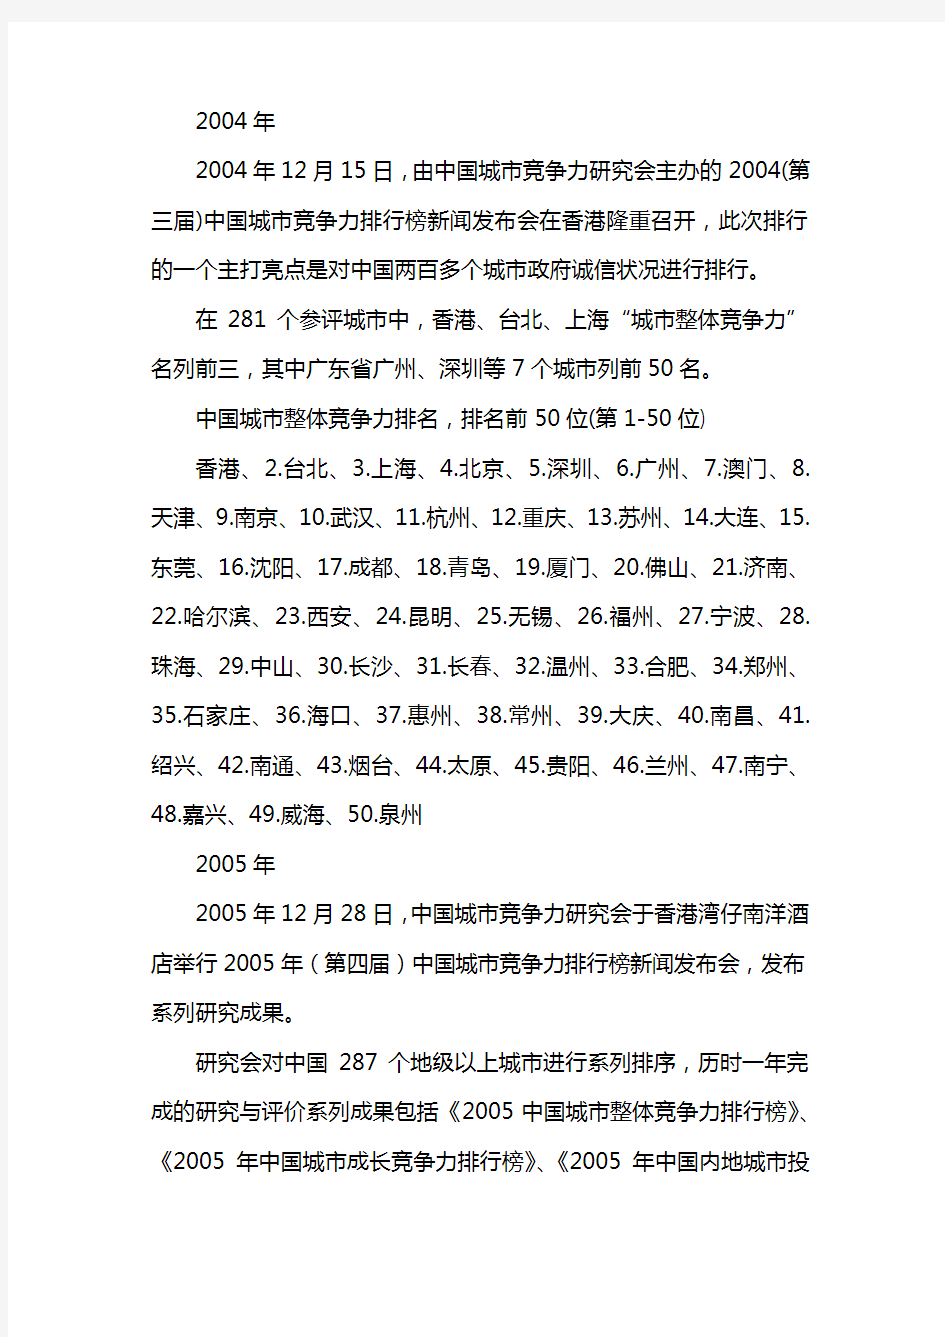 2014中国城市竞争力排名